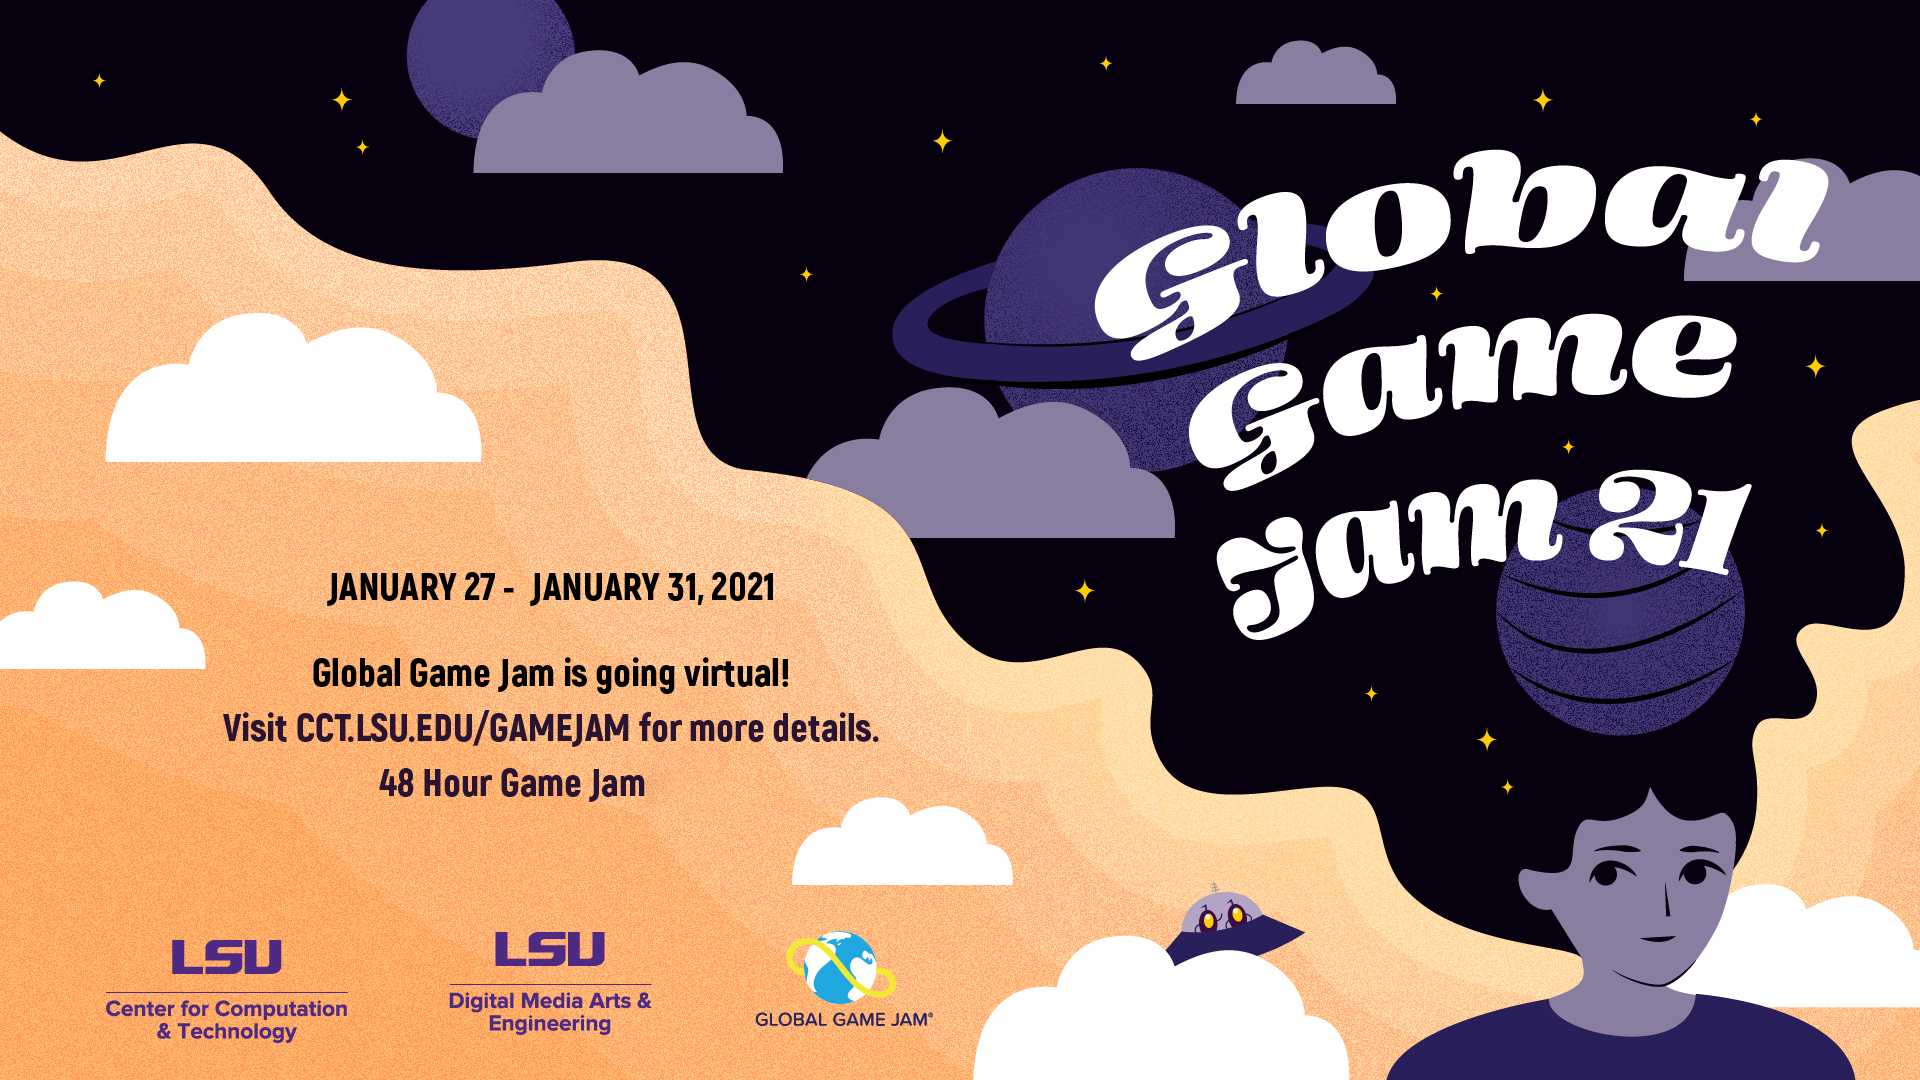 Virtual LSU Global Game Jam '21 news story